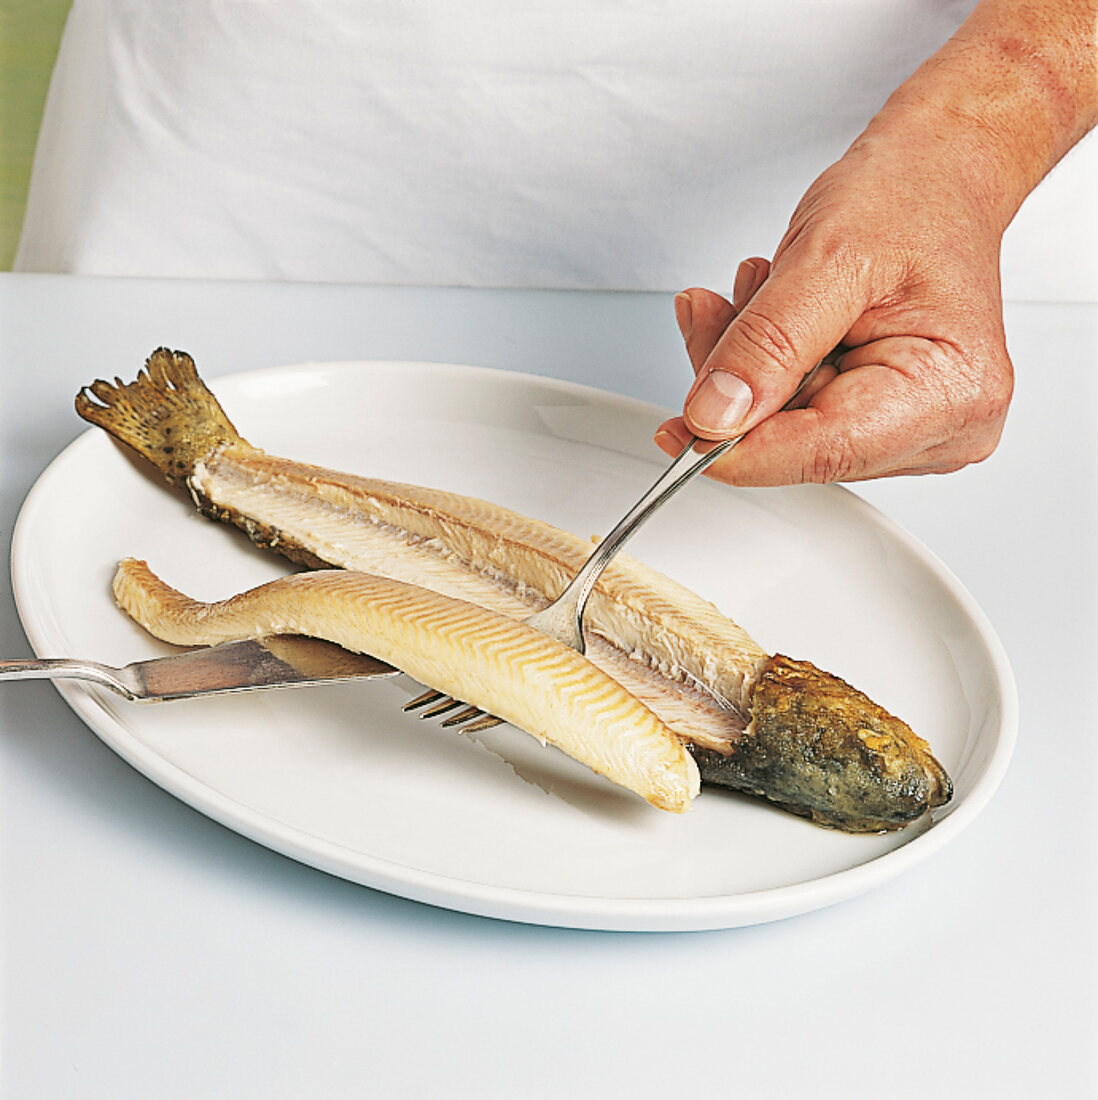 Fisch - Gegarten Fisch zerlegen, Step 2, Filets abheben